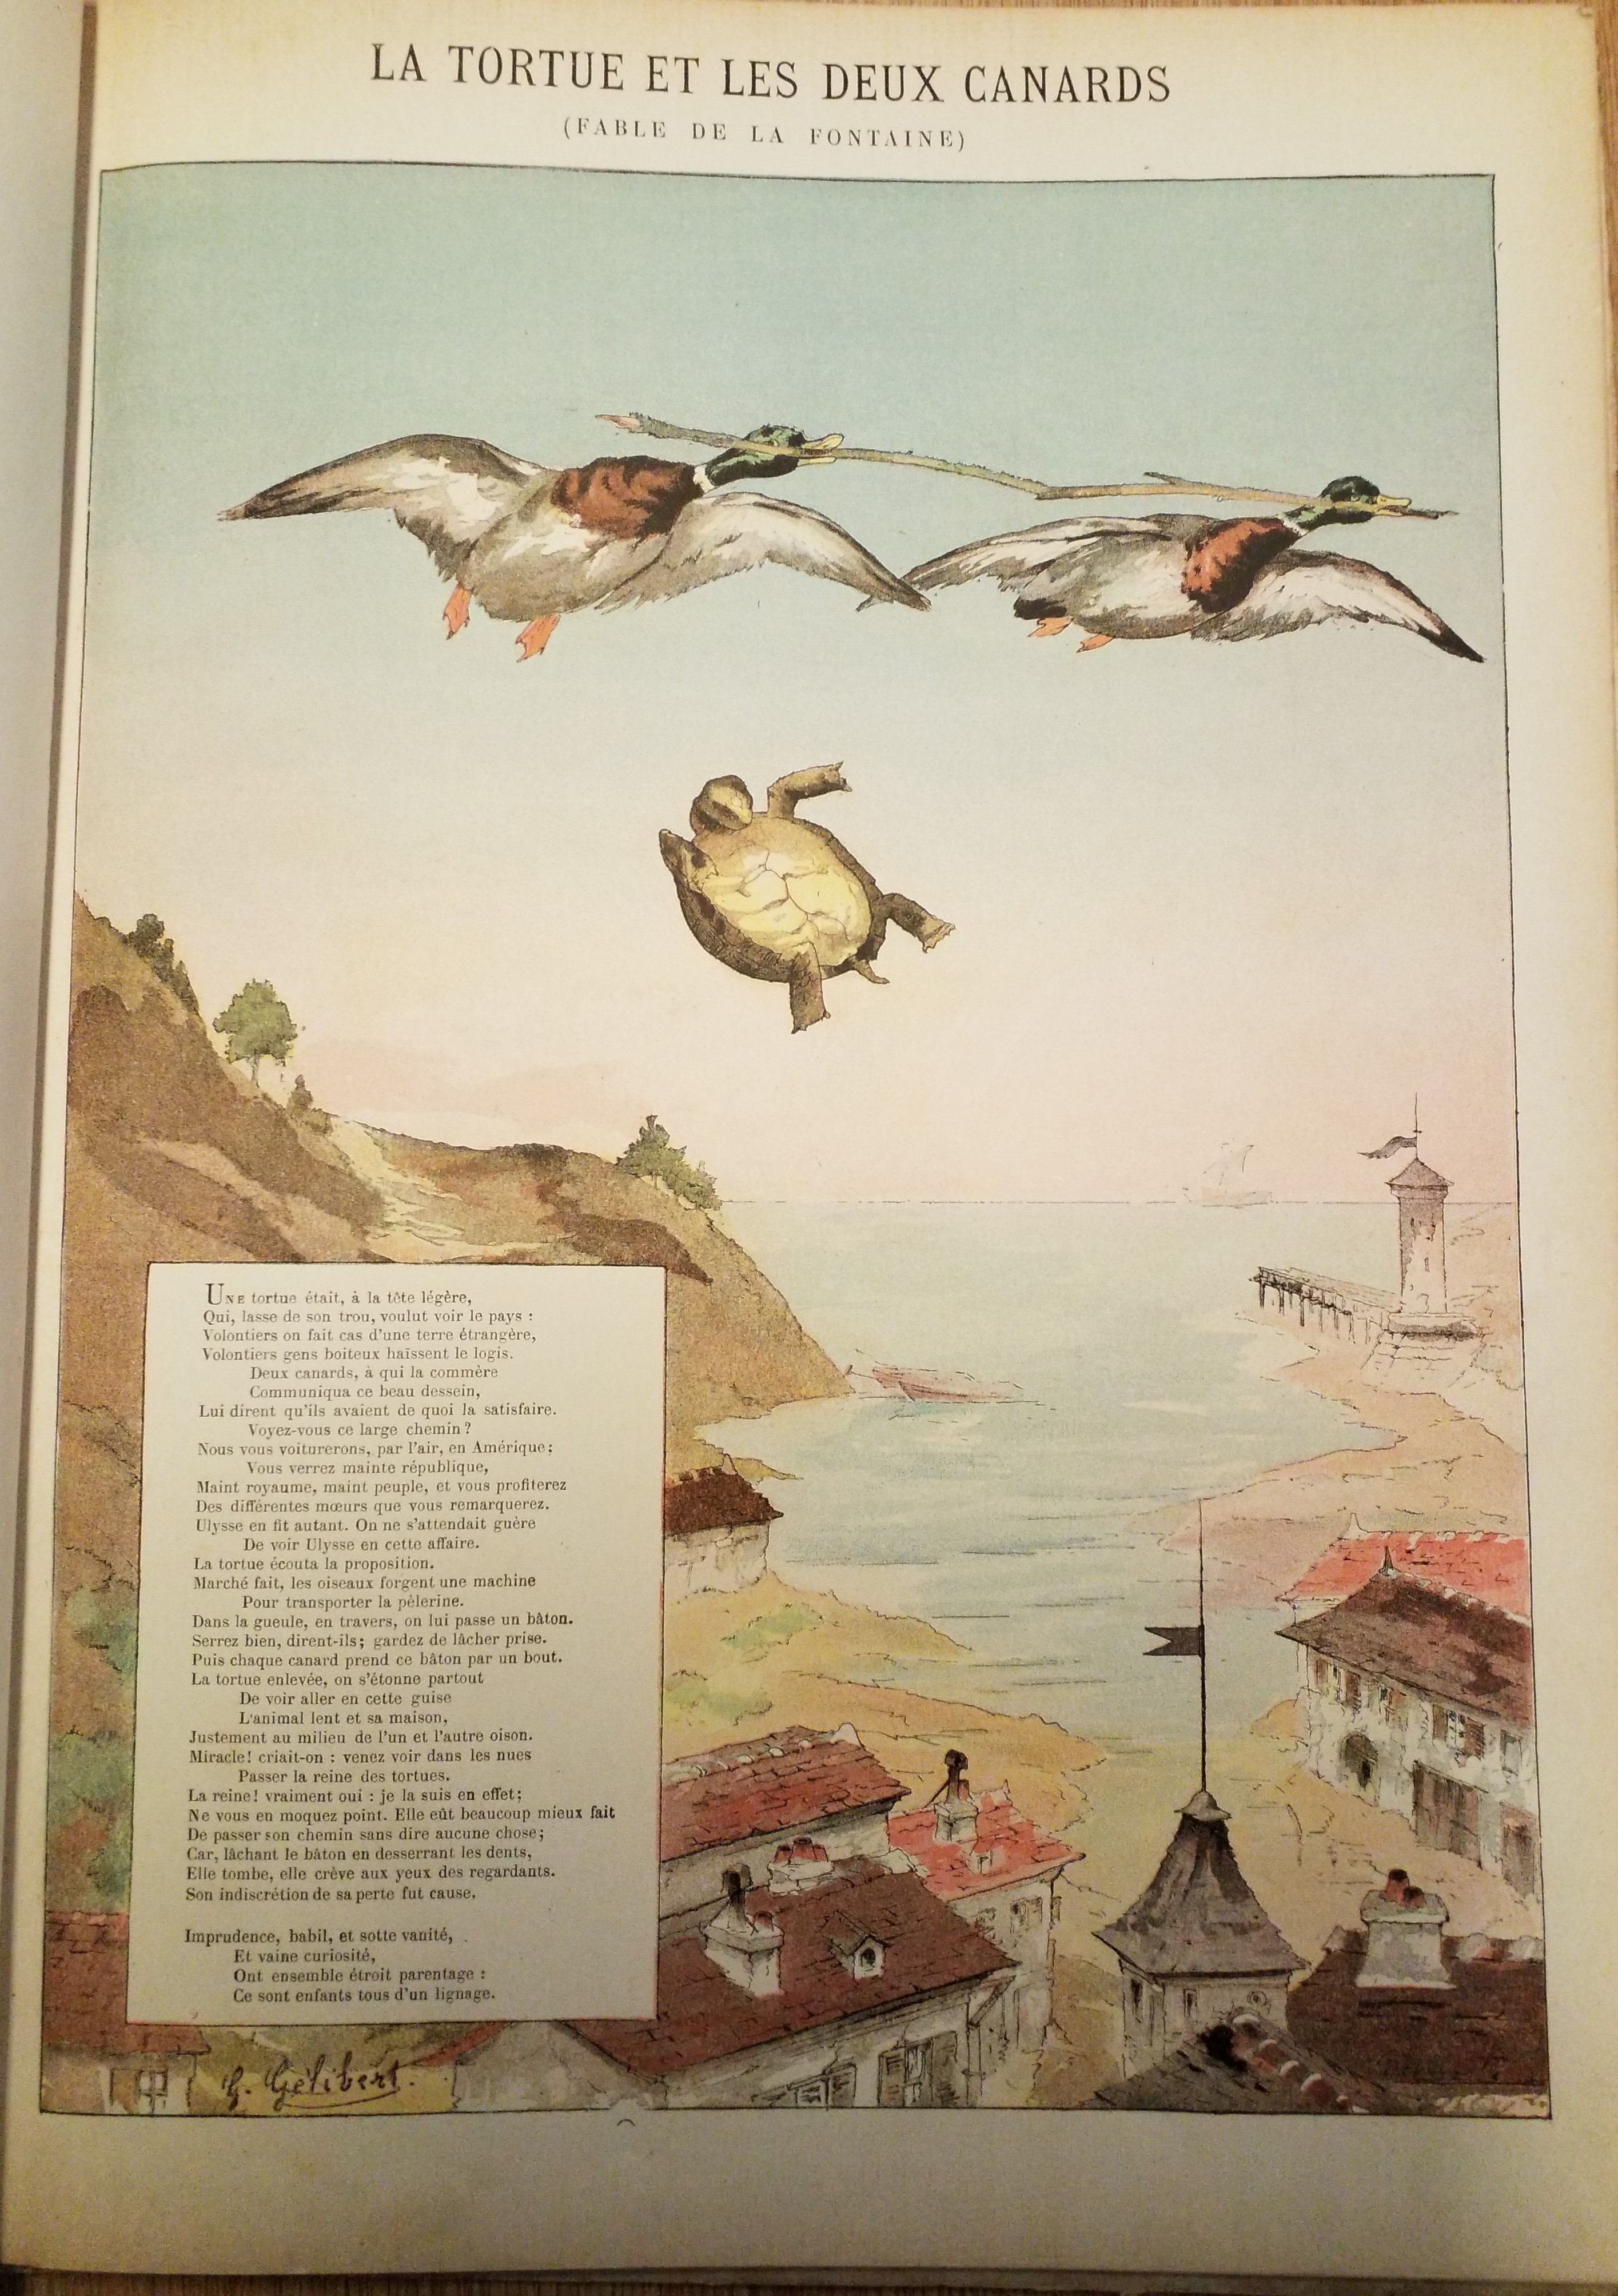 Imagerie Artistique: 20 Fables de La Fontaine illustrated by Gaston Gélibert, c.1900